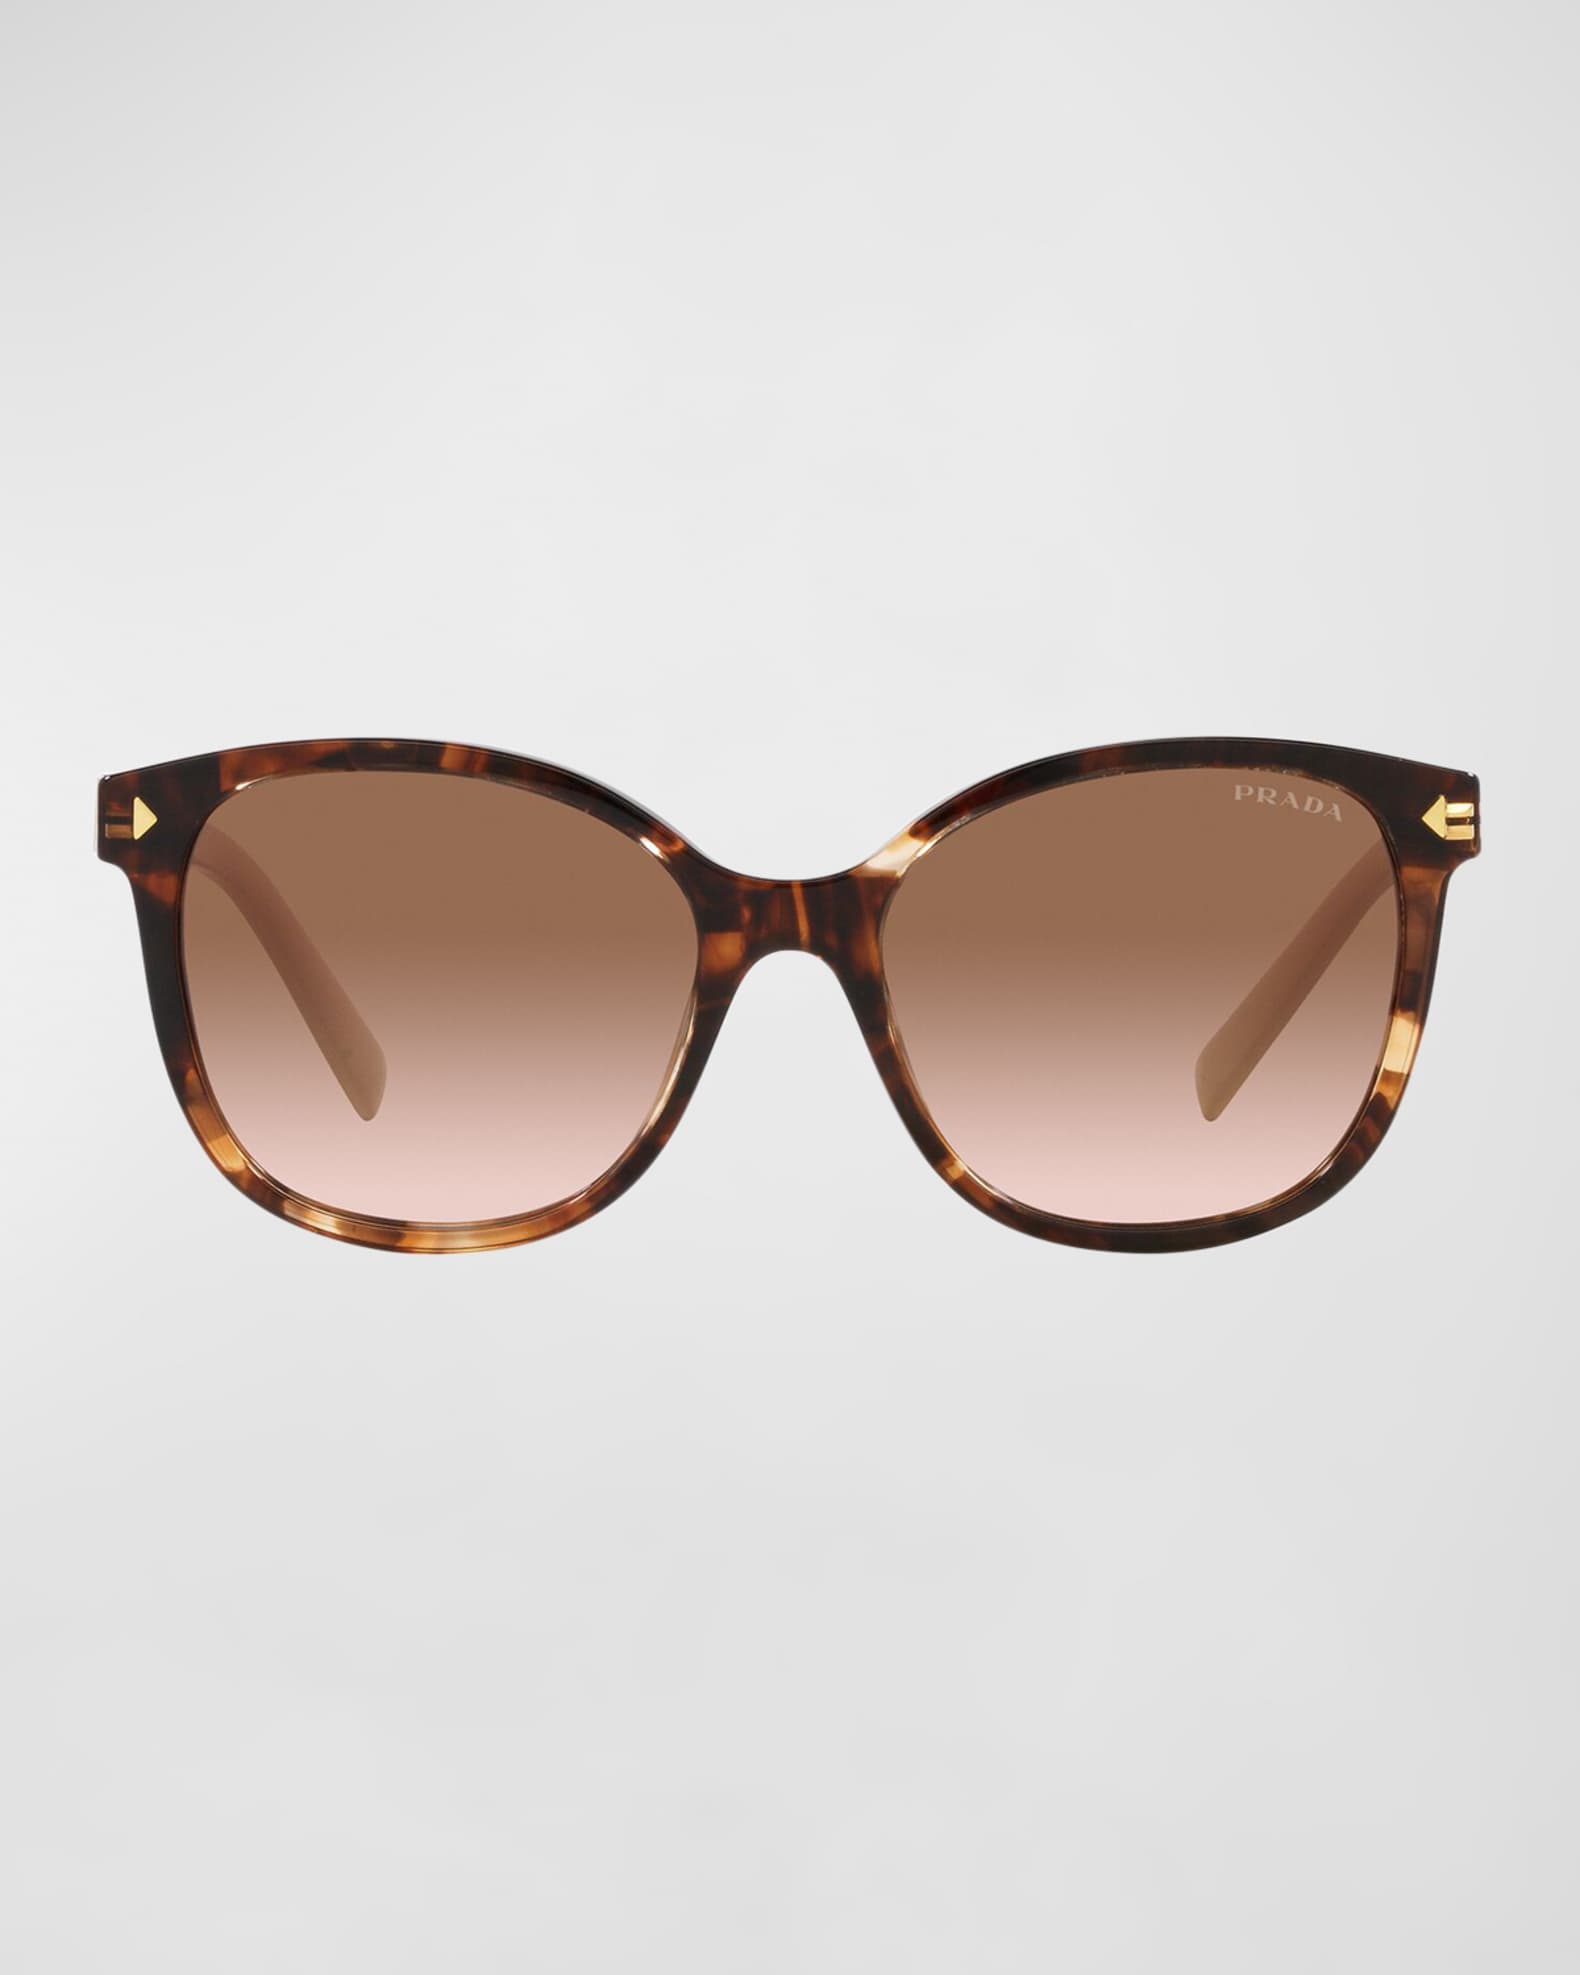 Prada PR 22ZS Two-Tone Square Acetate Sunglasses | Neiman Marcus